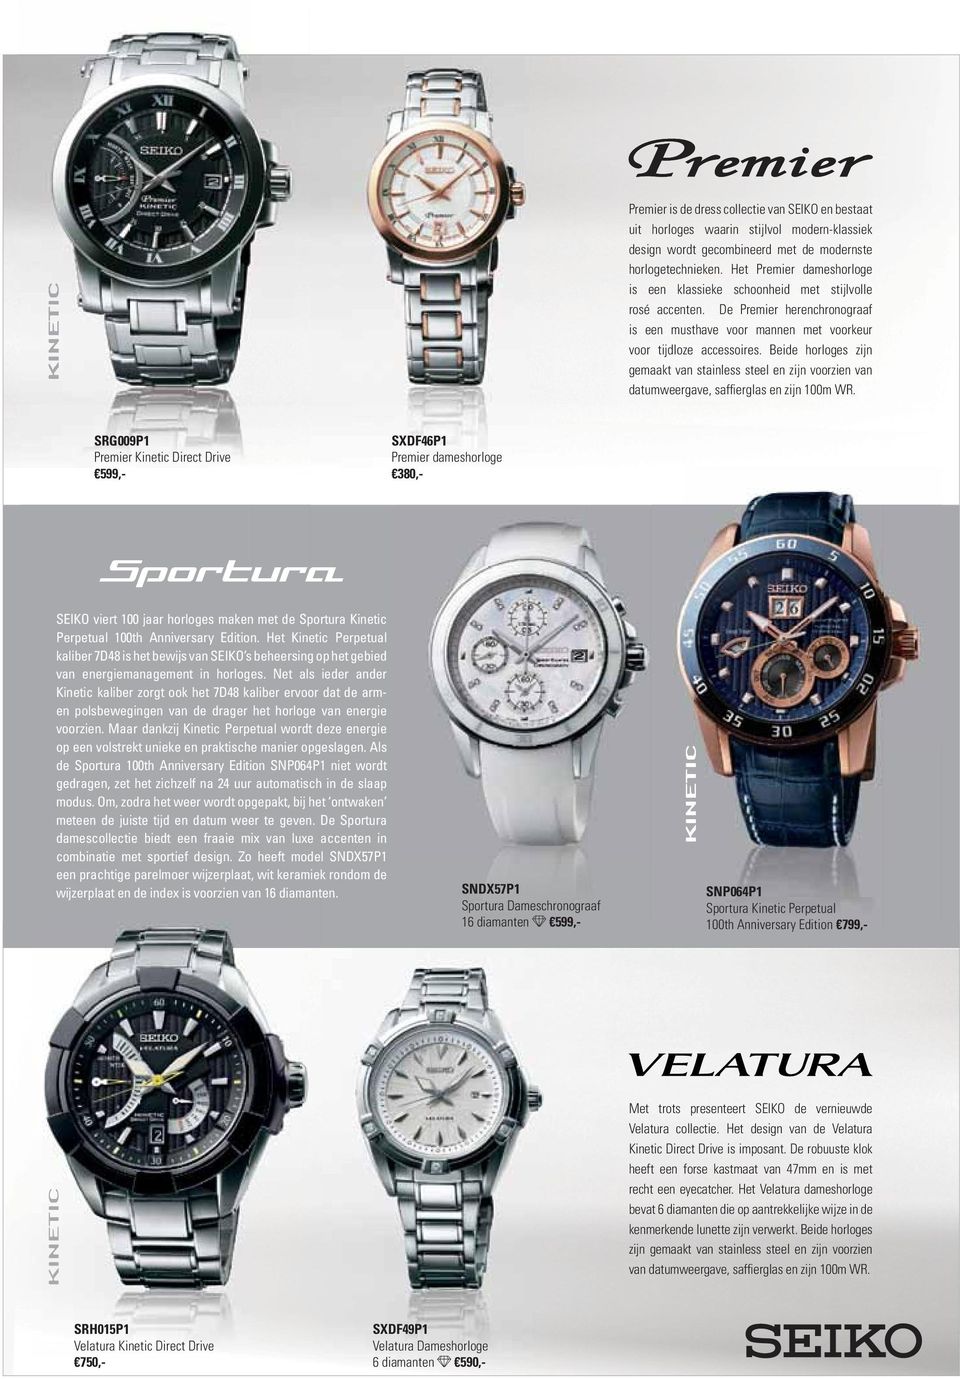 Beide horloges zijn gemaakt van stainless steel en zijn voorzien van datumweergave, saffierglas en zijn 100m WR.